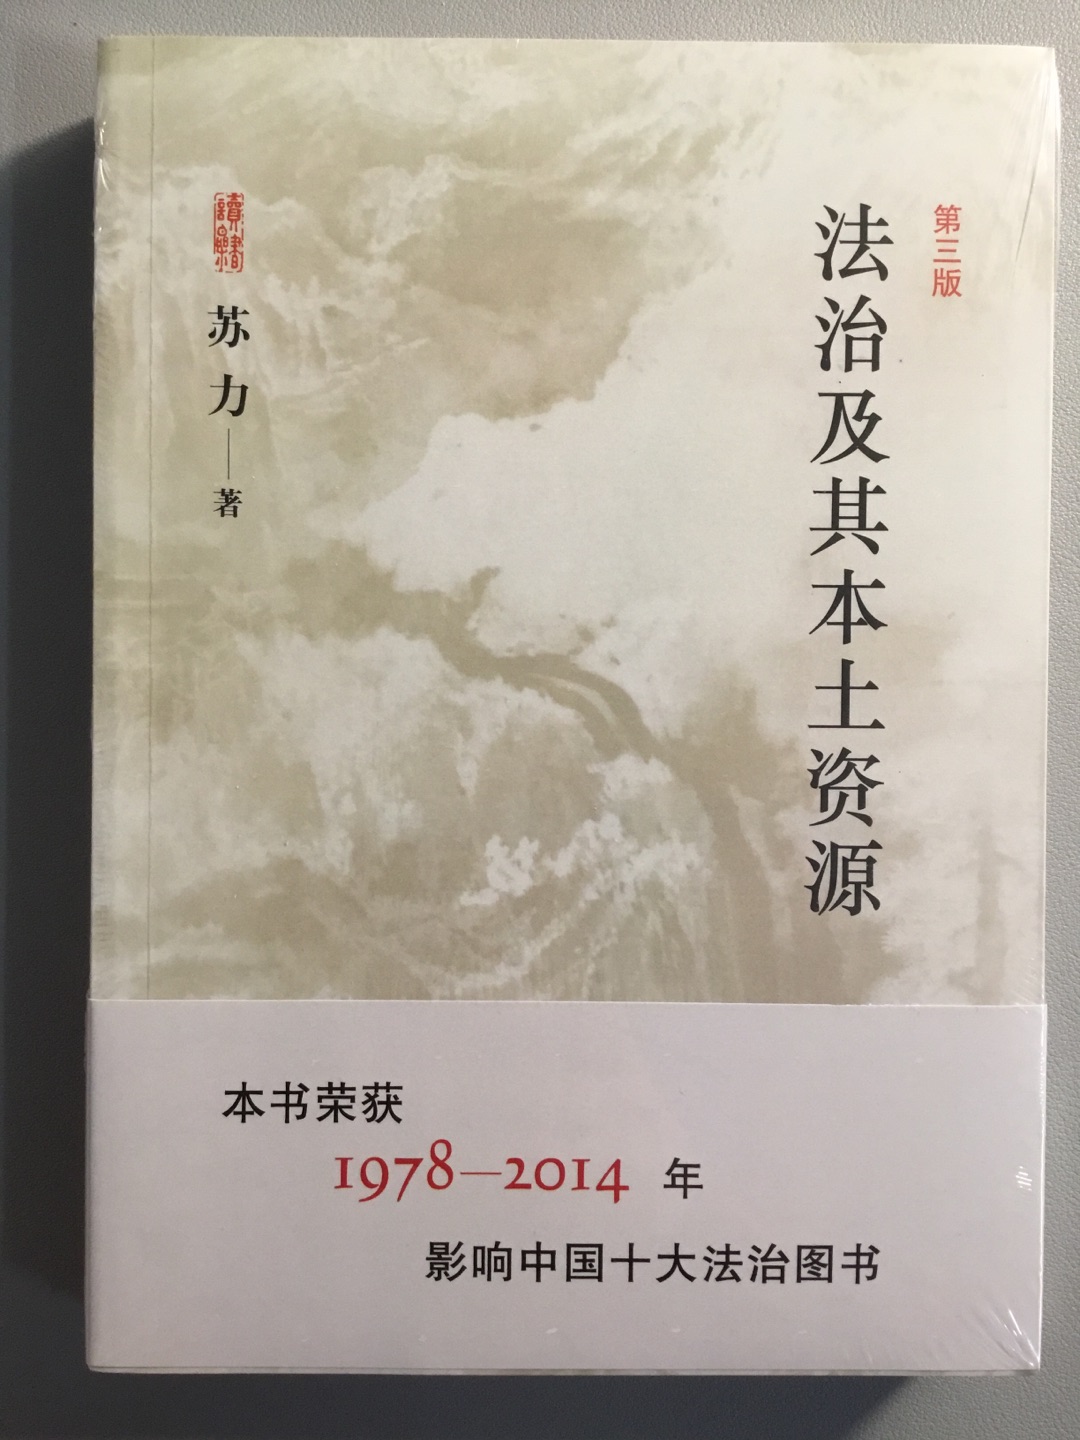 《法治及其本土资源》出版于1996年，面对概念法学和政治哲学充斥法理学研究的时代，苏力另辟蹊径，强调学者要“理解中国”，重视“本土资源”，发现现实生活中的合理之处，并暗示域外的“法治”要在中国落地生根，必须考虑“中国土壤”，而探求这种东西是法治研究的前提和基础。